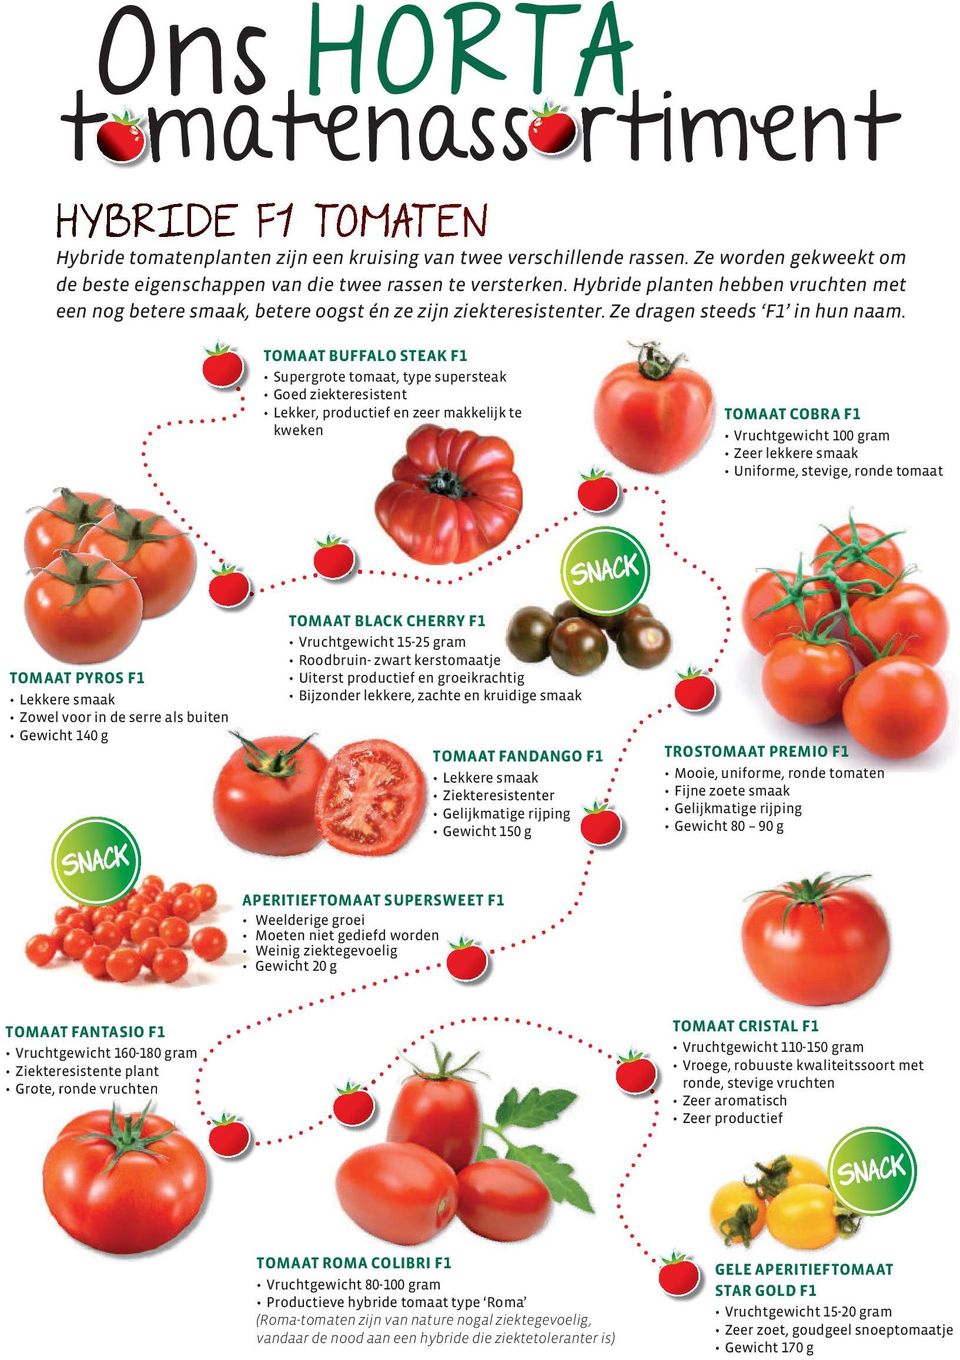 TOMAAT BUFFALO STEAK F1 Supergrote tomaat, type supersteak Goed ziekteresistent Lekker, productief en zeer makkelijk te kweken TOMAAT COBRA F1 Vruchtgewicht 100 gram Zeer lekkere smaak Uniforme,